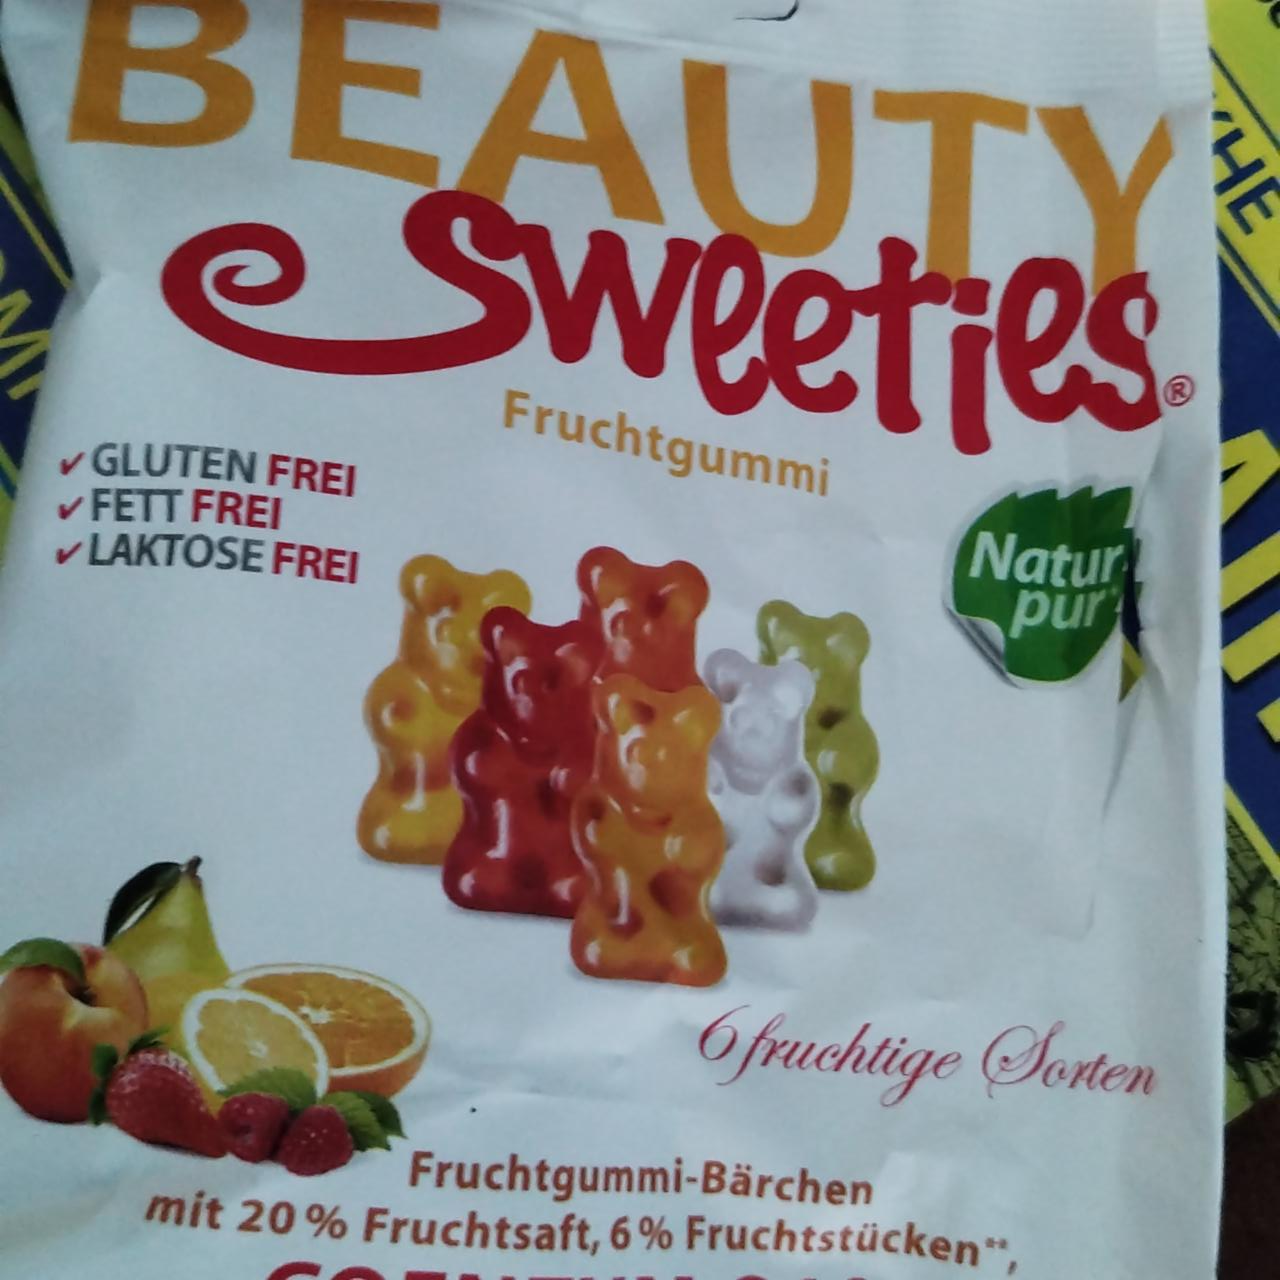 Фото - Beauty Sweeties želé ovocní medvídci Natur pur